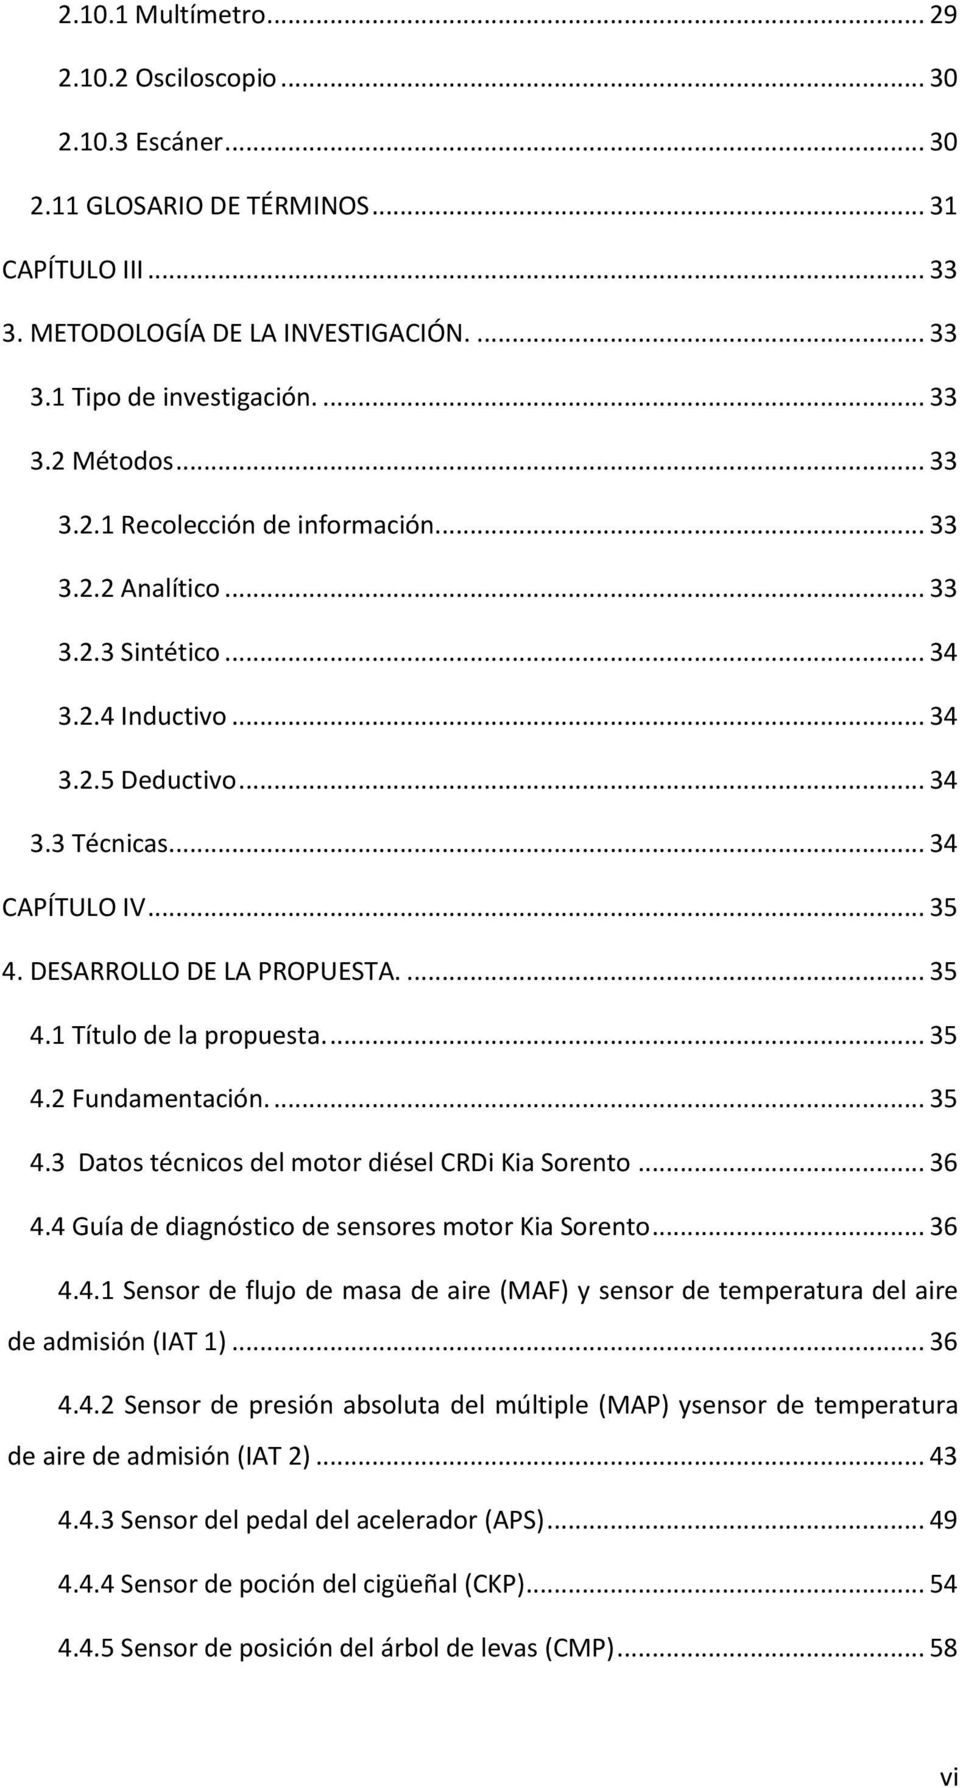 ... 35 4.1 Título de la propuesta.... 35 4.2 Fundamentación.... 35 4.3 Datos técnicos del motor diésel CRDi Kia Sorento... 36 4.4 Guía de diagnóstico de sensores motor Kia Sorento... 36 4.4.1 Sensor de flujo de masa de aire (MAF) y sensor de temperatura del aire de admisión (IAT 1).